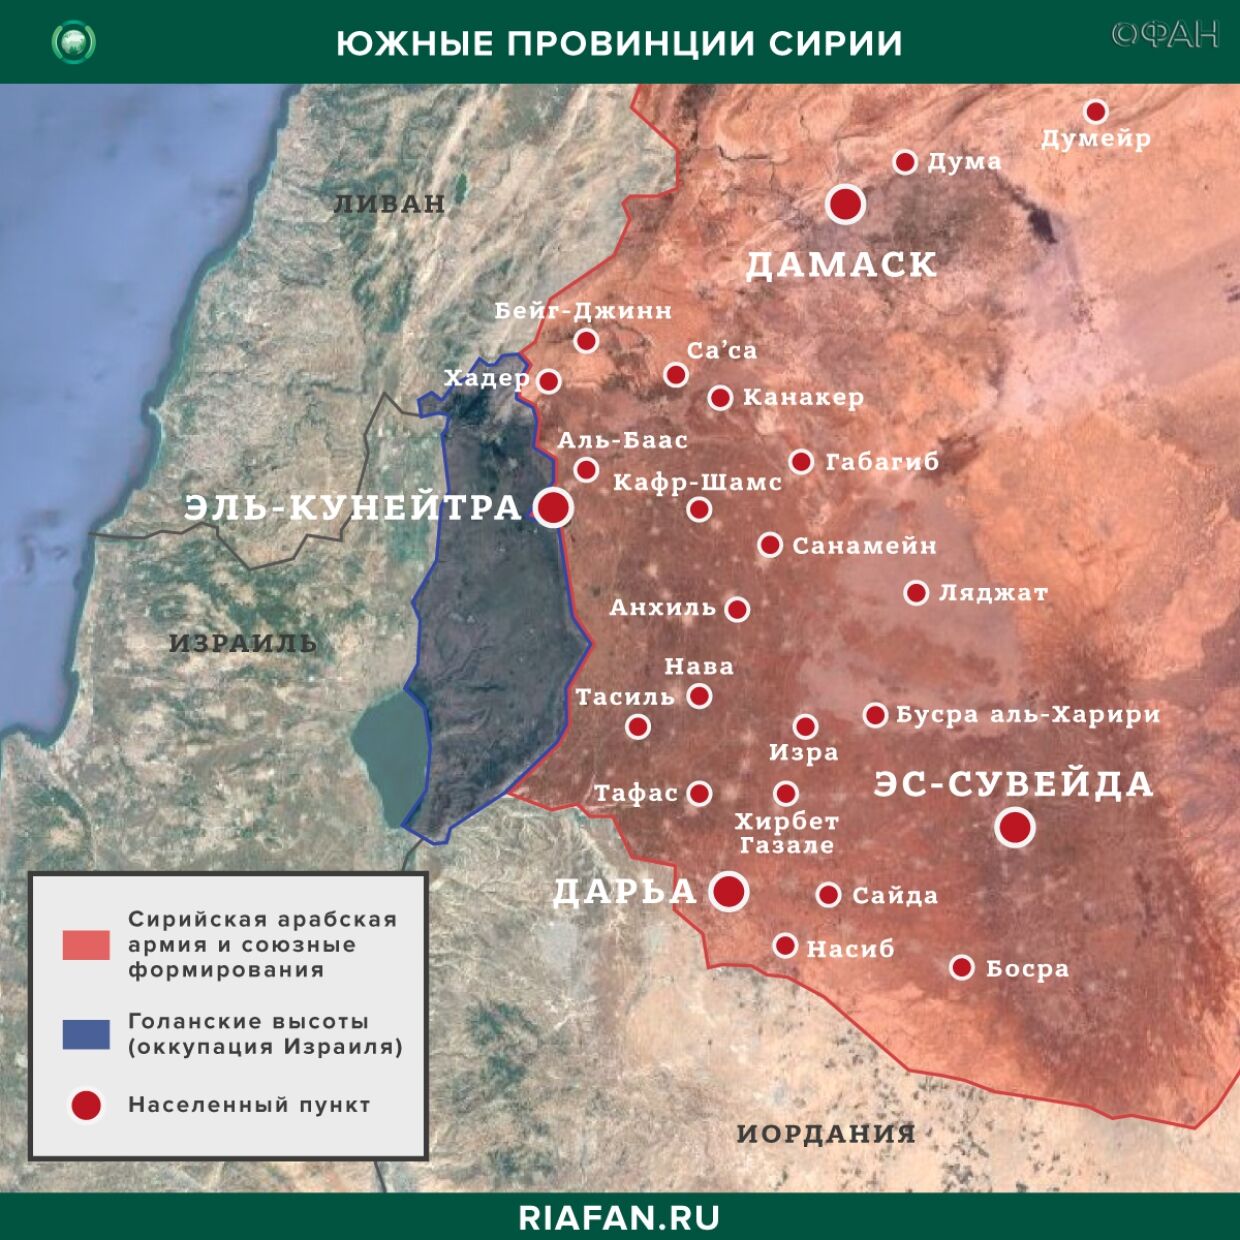 Resultados diarios de Siria para 26 Mayo 06.00: в Идлибе убит командир боевиков, в САР зарегистрированы 20 новых случаев заражения коронавирусом